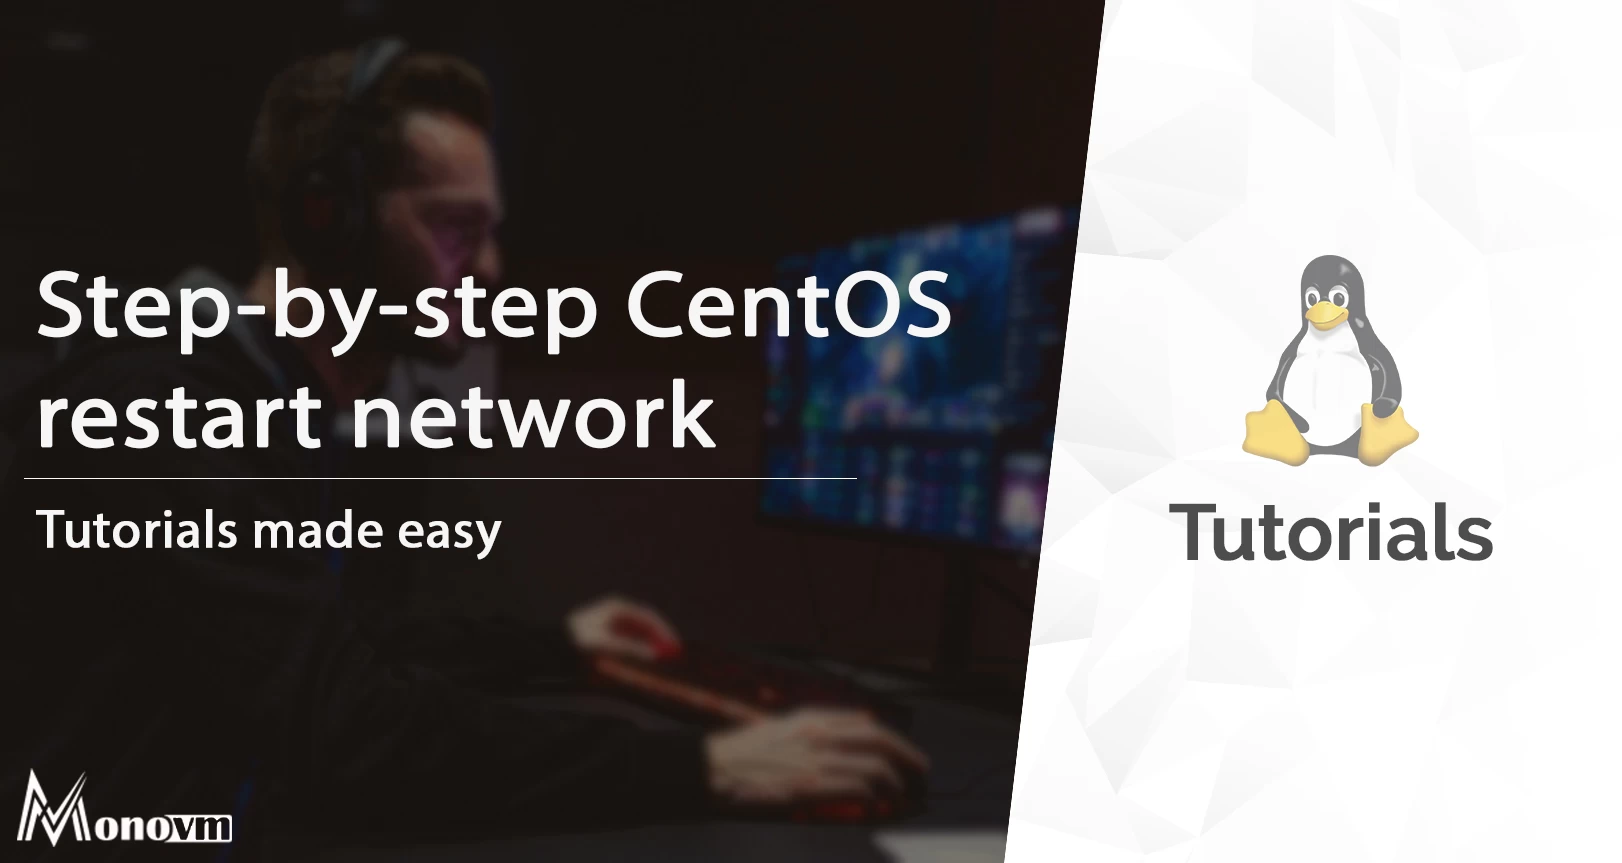 CentOS restart network step-by-step